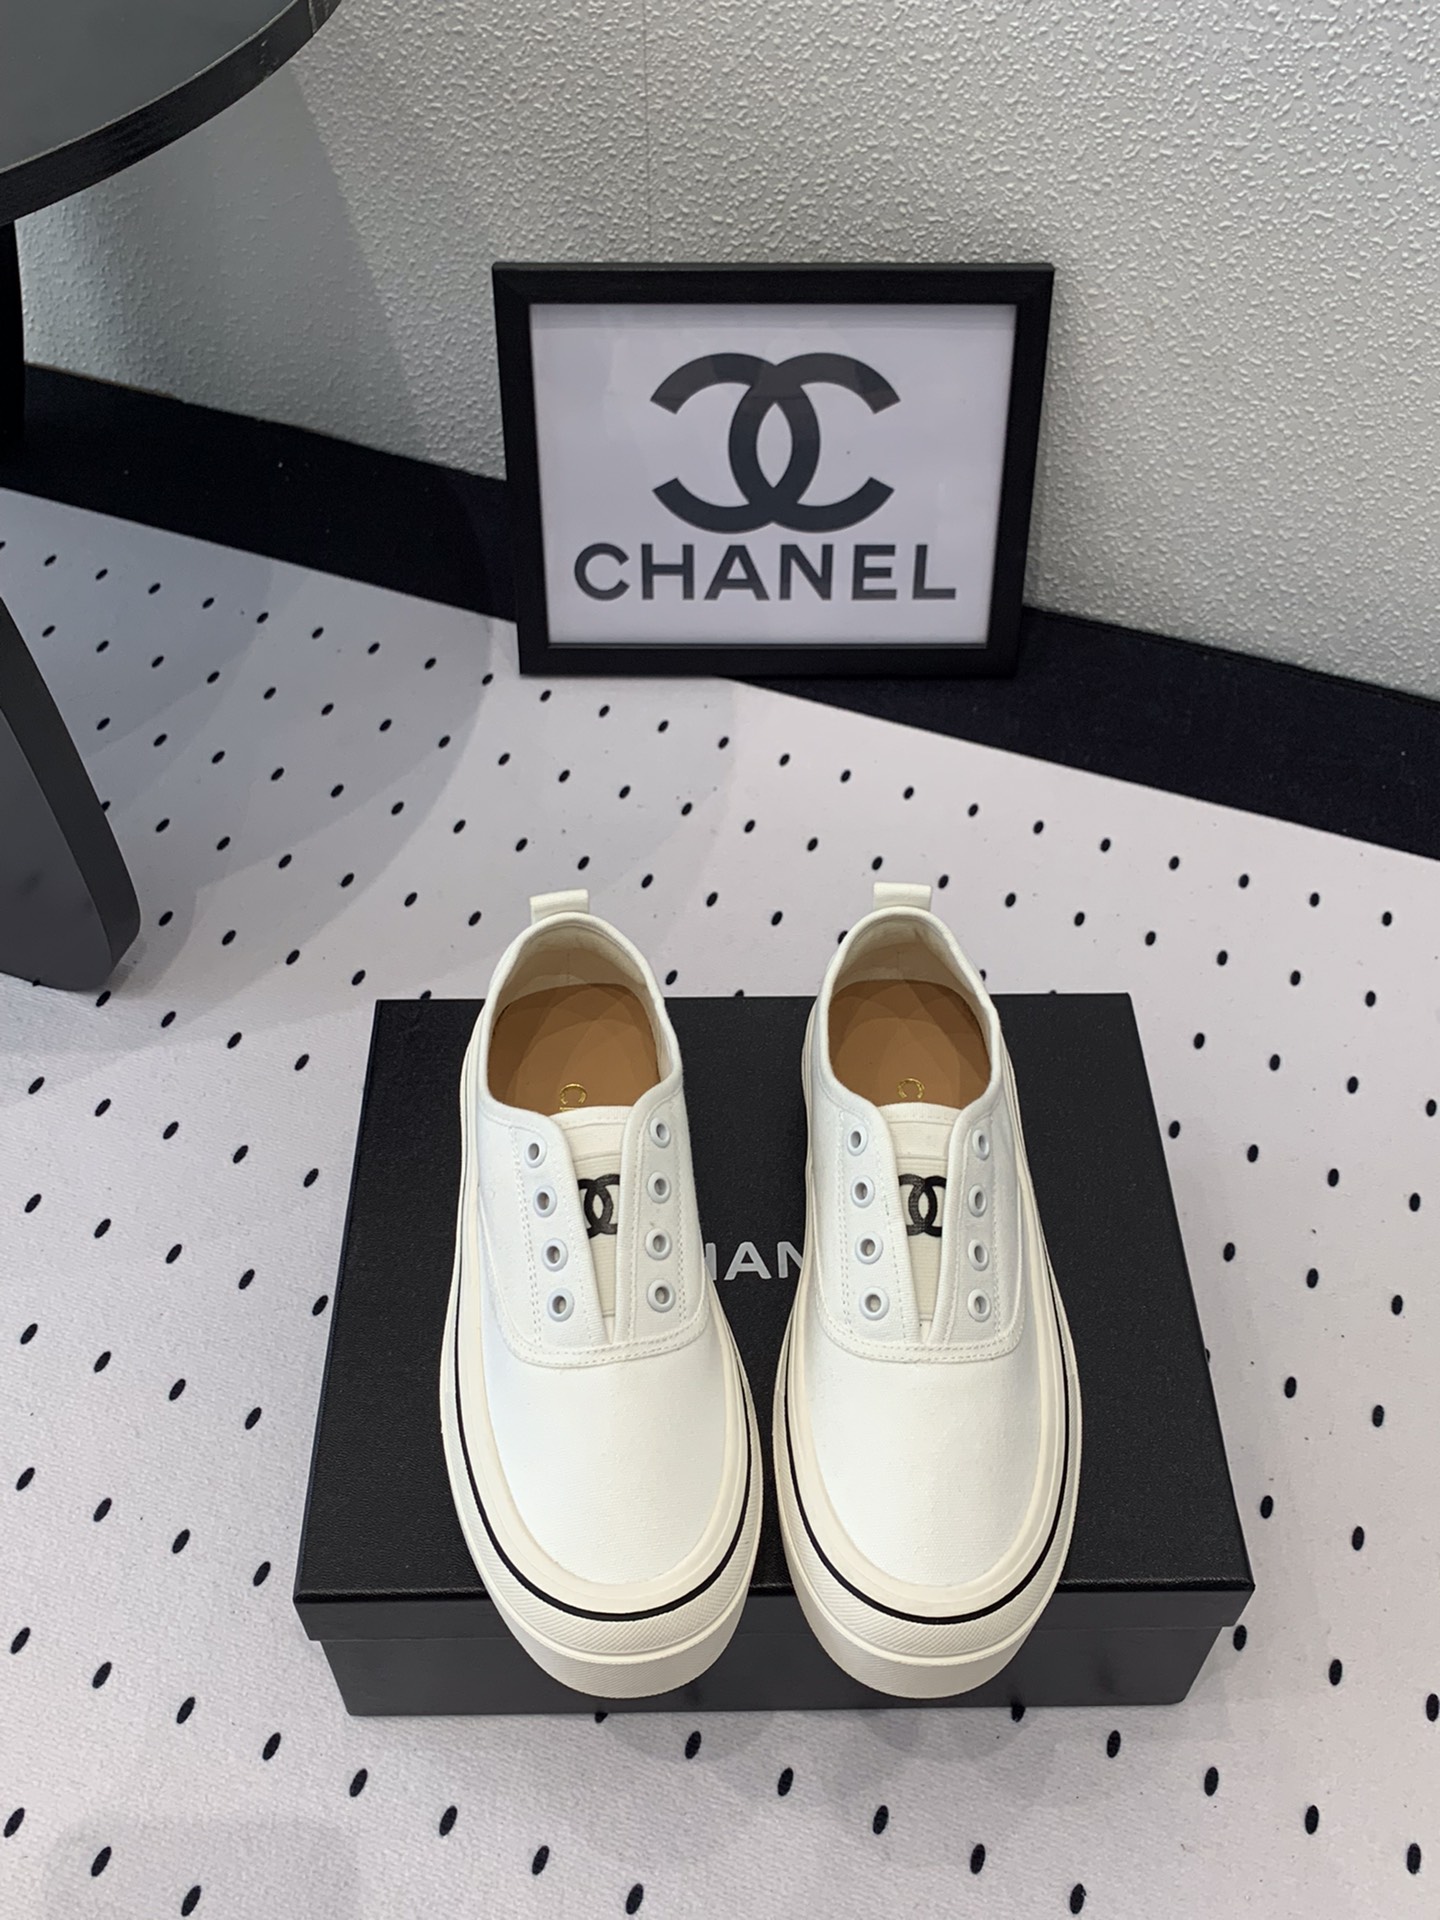 Chanel Chaussures En Toile Toile Peau de mouton Le TPU Fashion